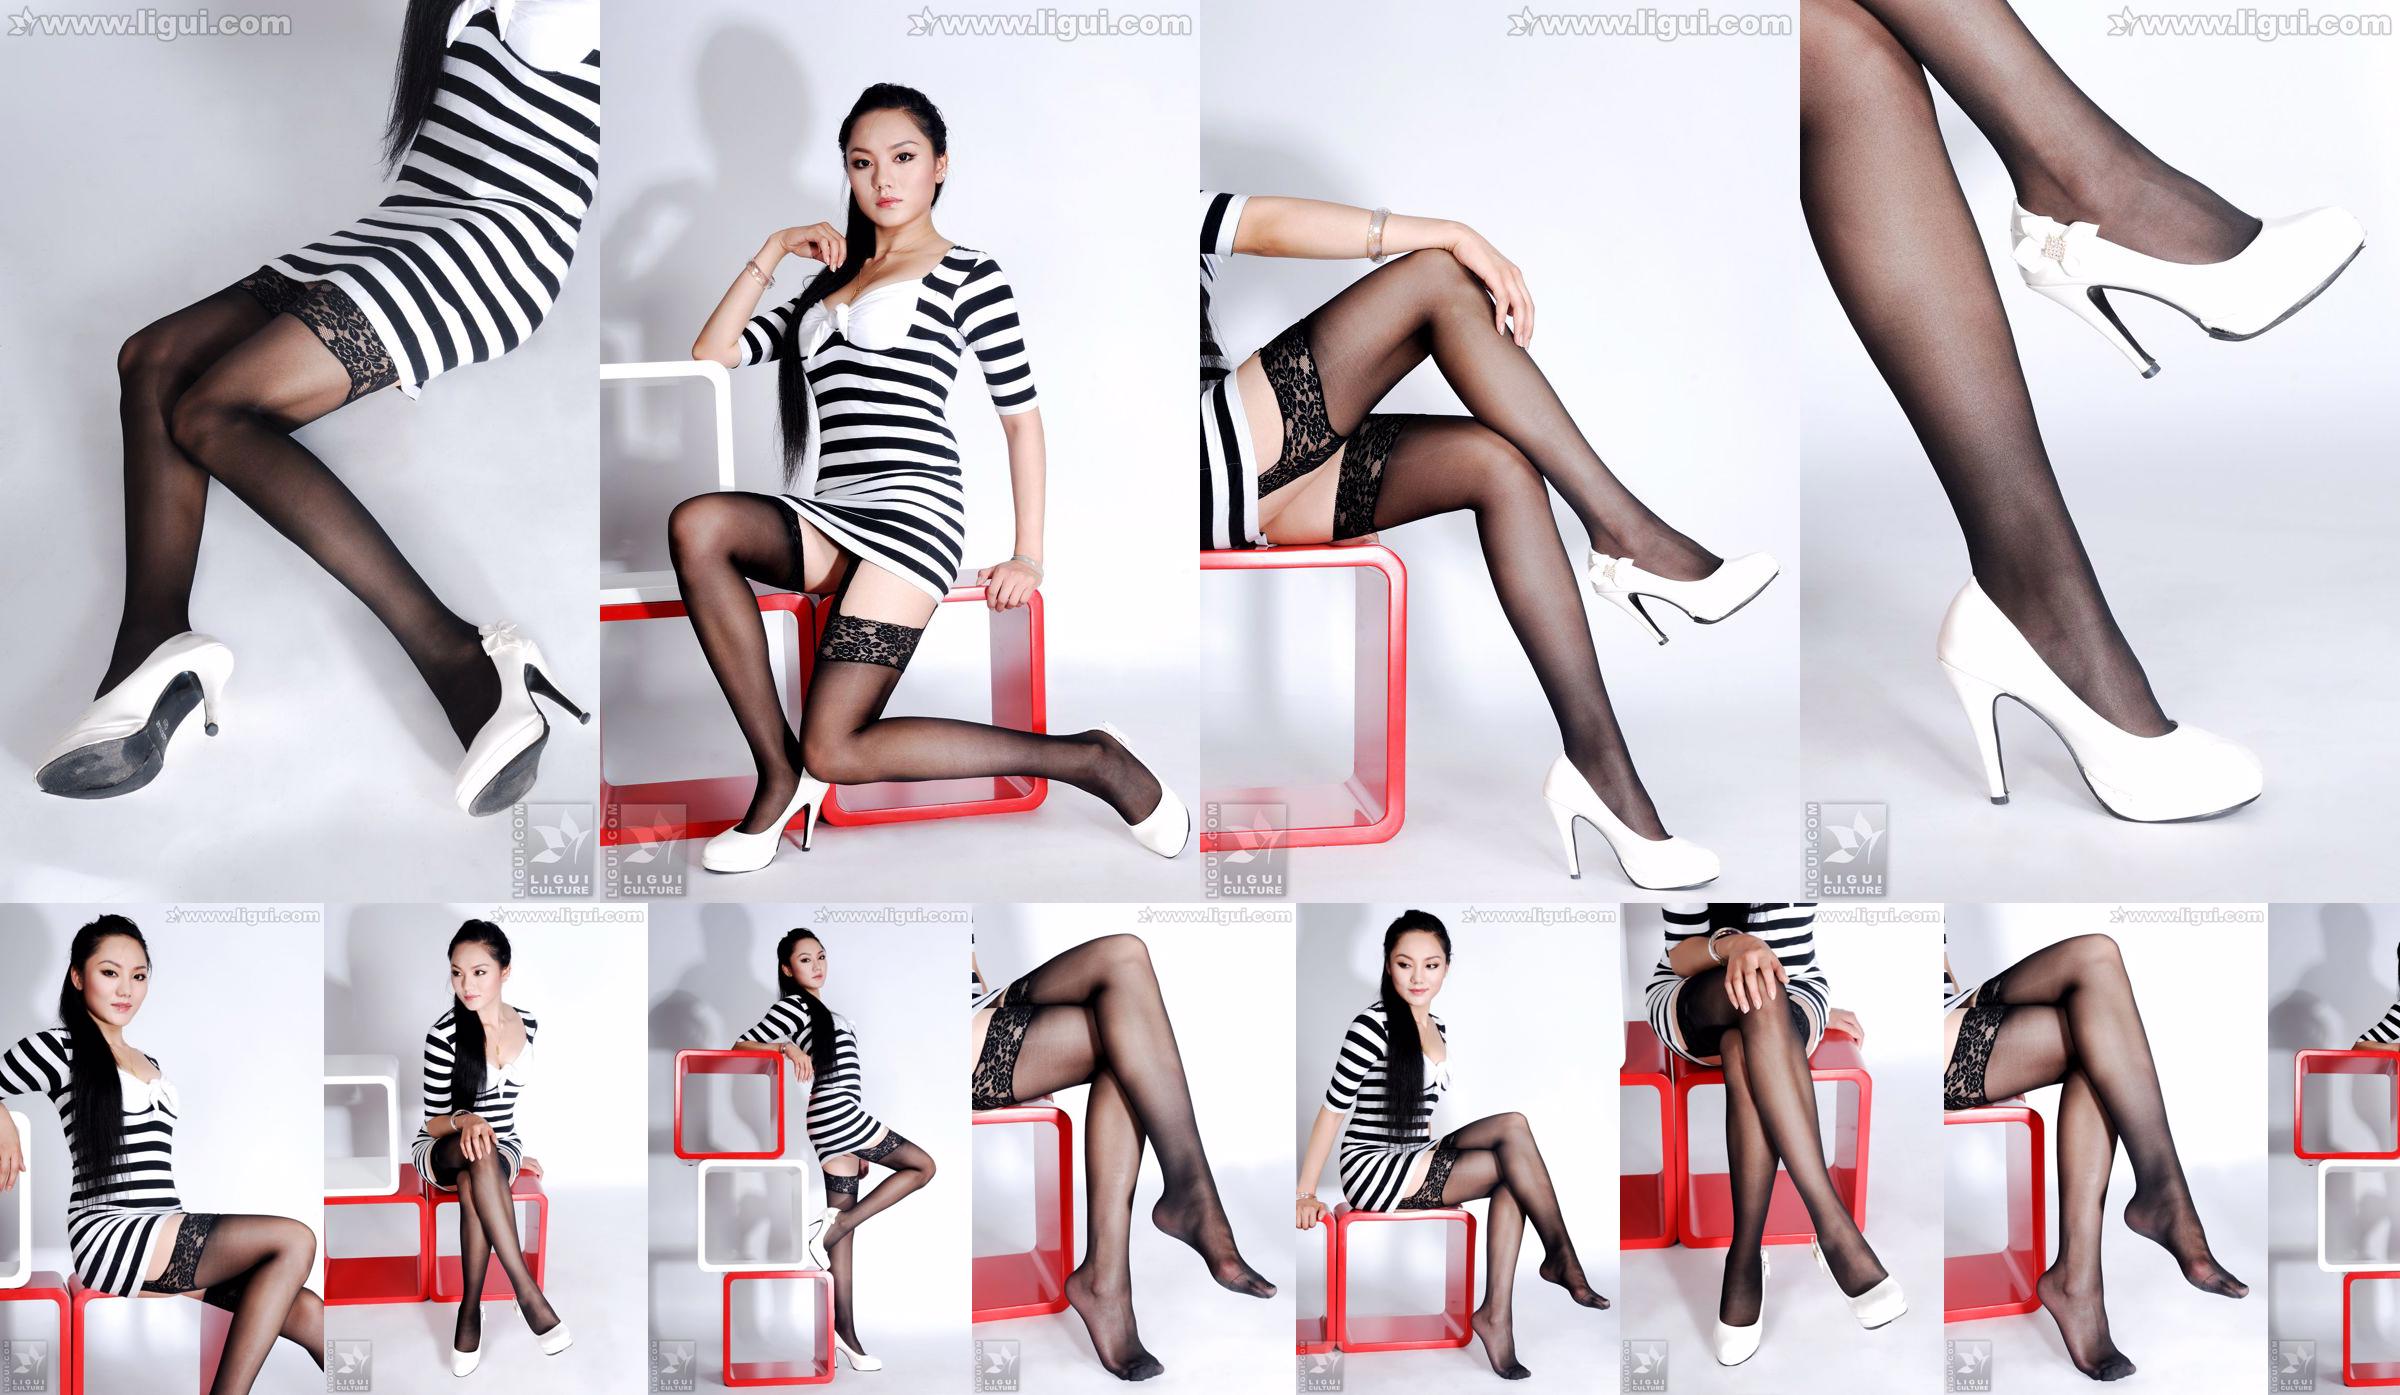 Model Yang Zi "Pesona Stoking dalam Dekorasi Rumah Sederhana" [丽 柜 LiGui] Foto kaki dan kaki giok yang indah No.e29407 Halaman 1